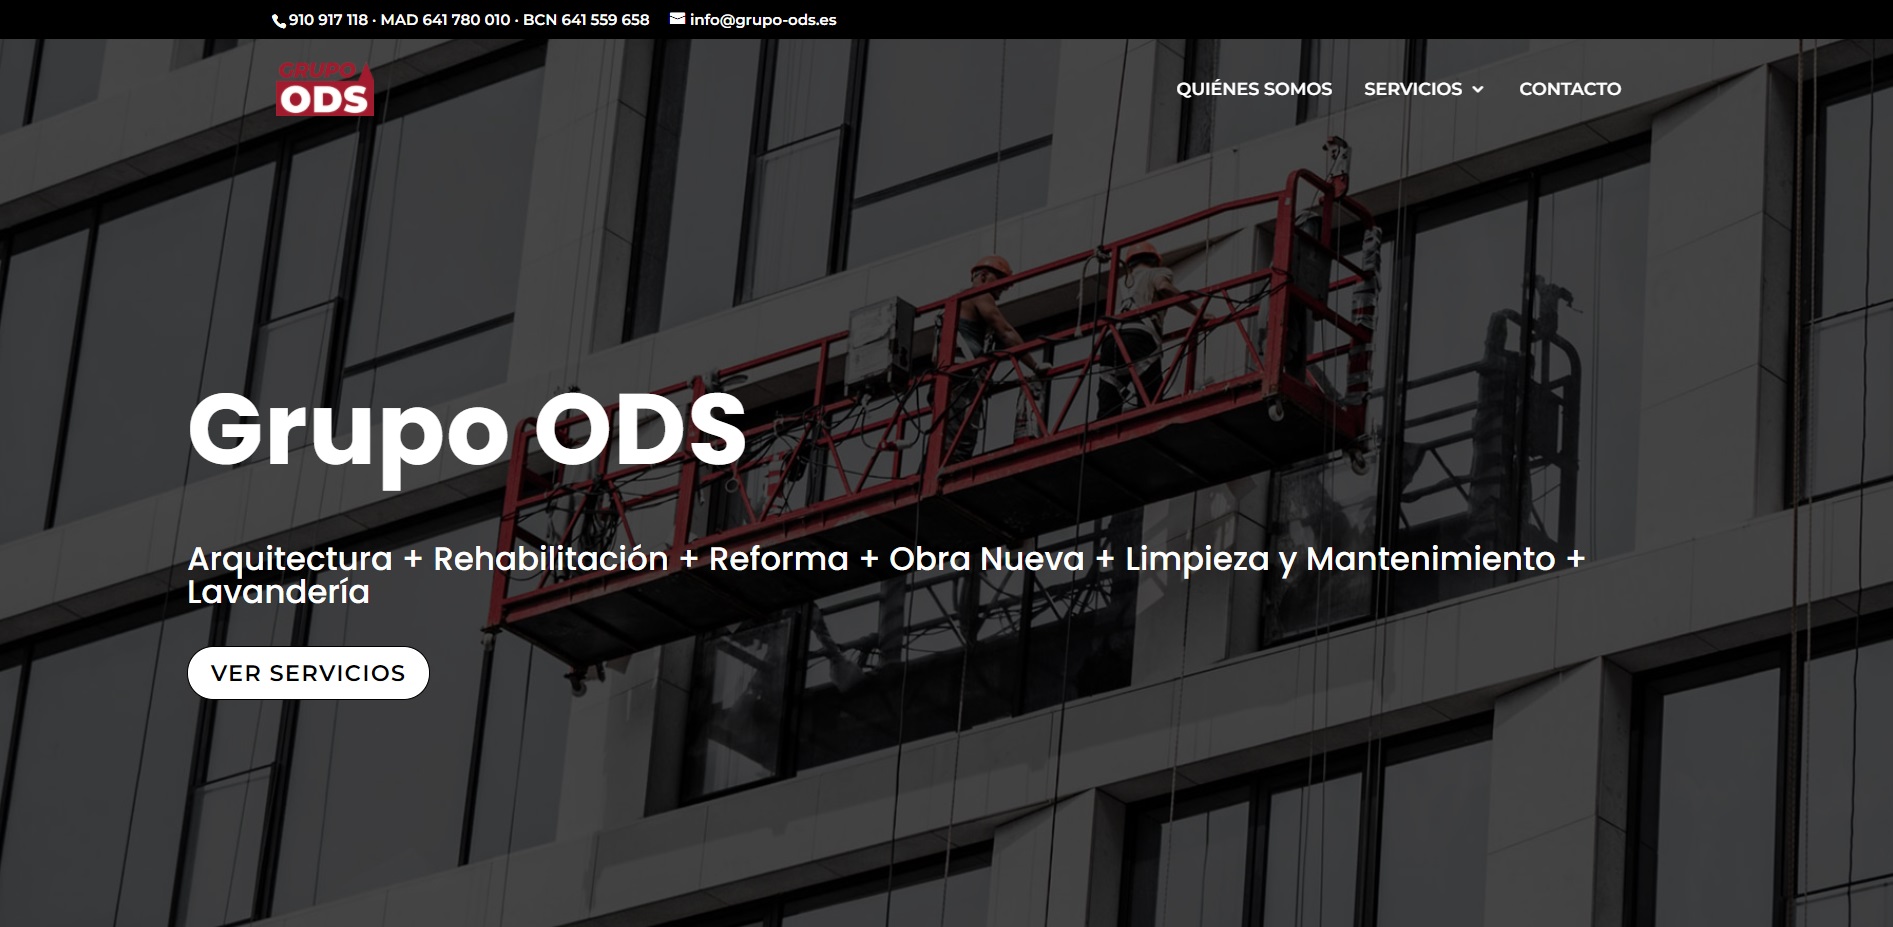 Nueva Web Grupo ODS - Arquitectura - Rehabilitación - Reforma - Obra nueva - Limpieza y mantenimiento - Lavandería - Iglesias